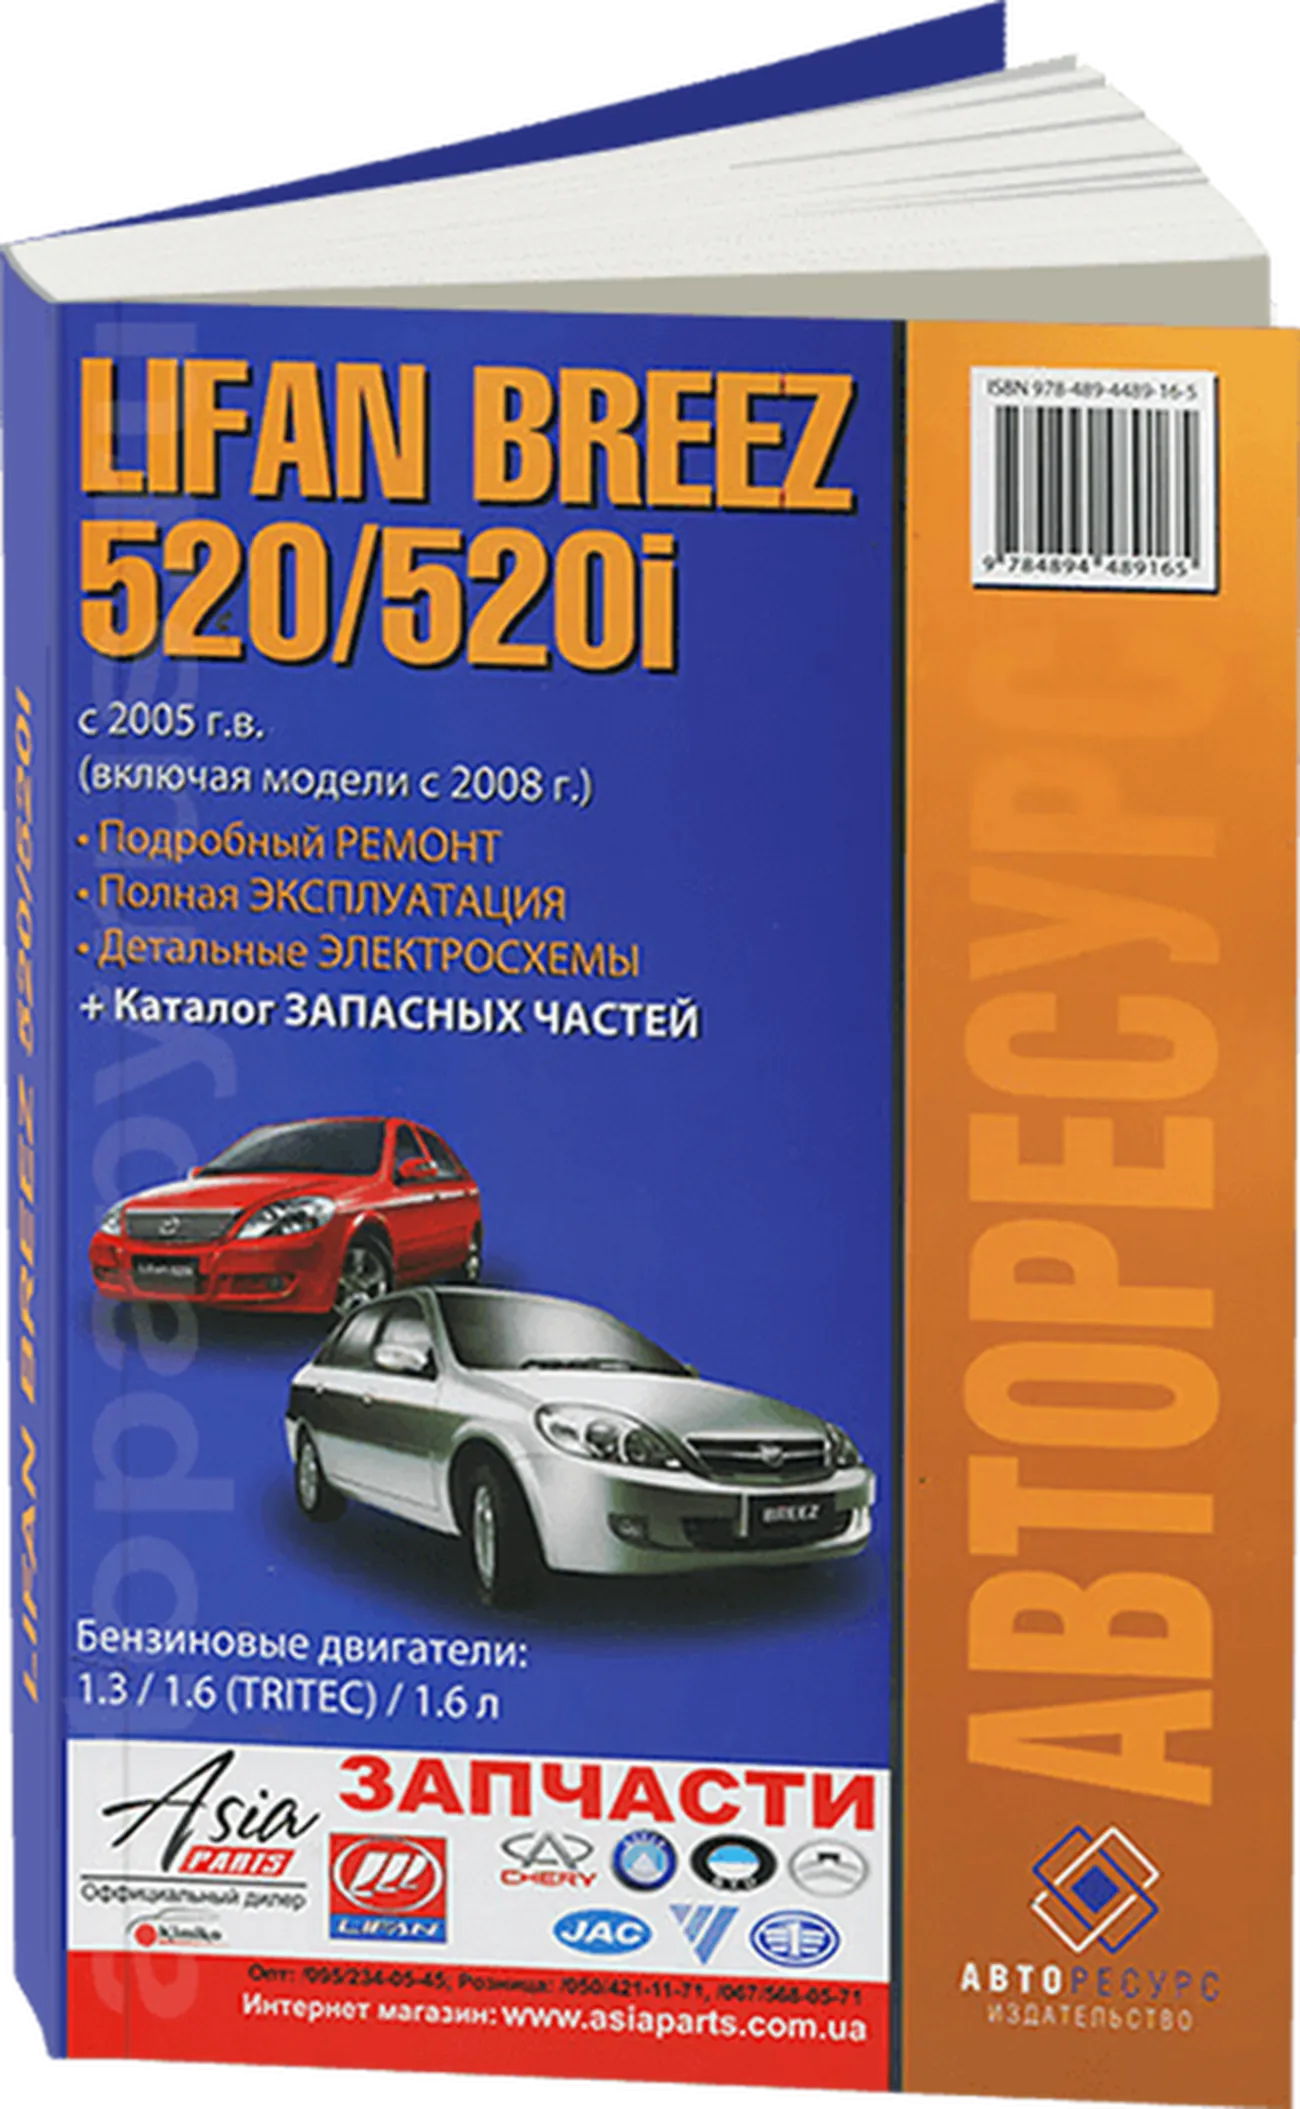 Книга: LIFAN BREEZ 520 / 520I (б) с 2005 + 2008 г.в., рем., экспл., то | Авторесурс